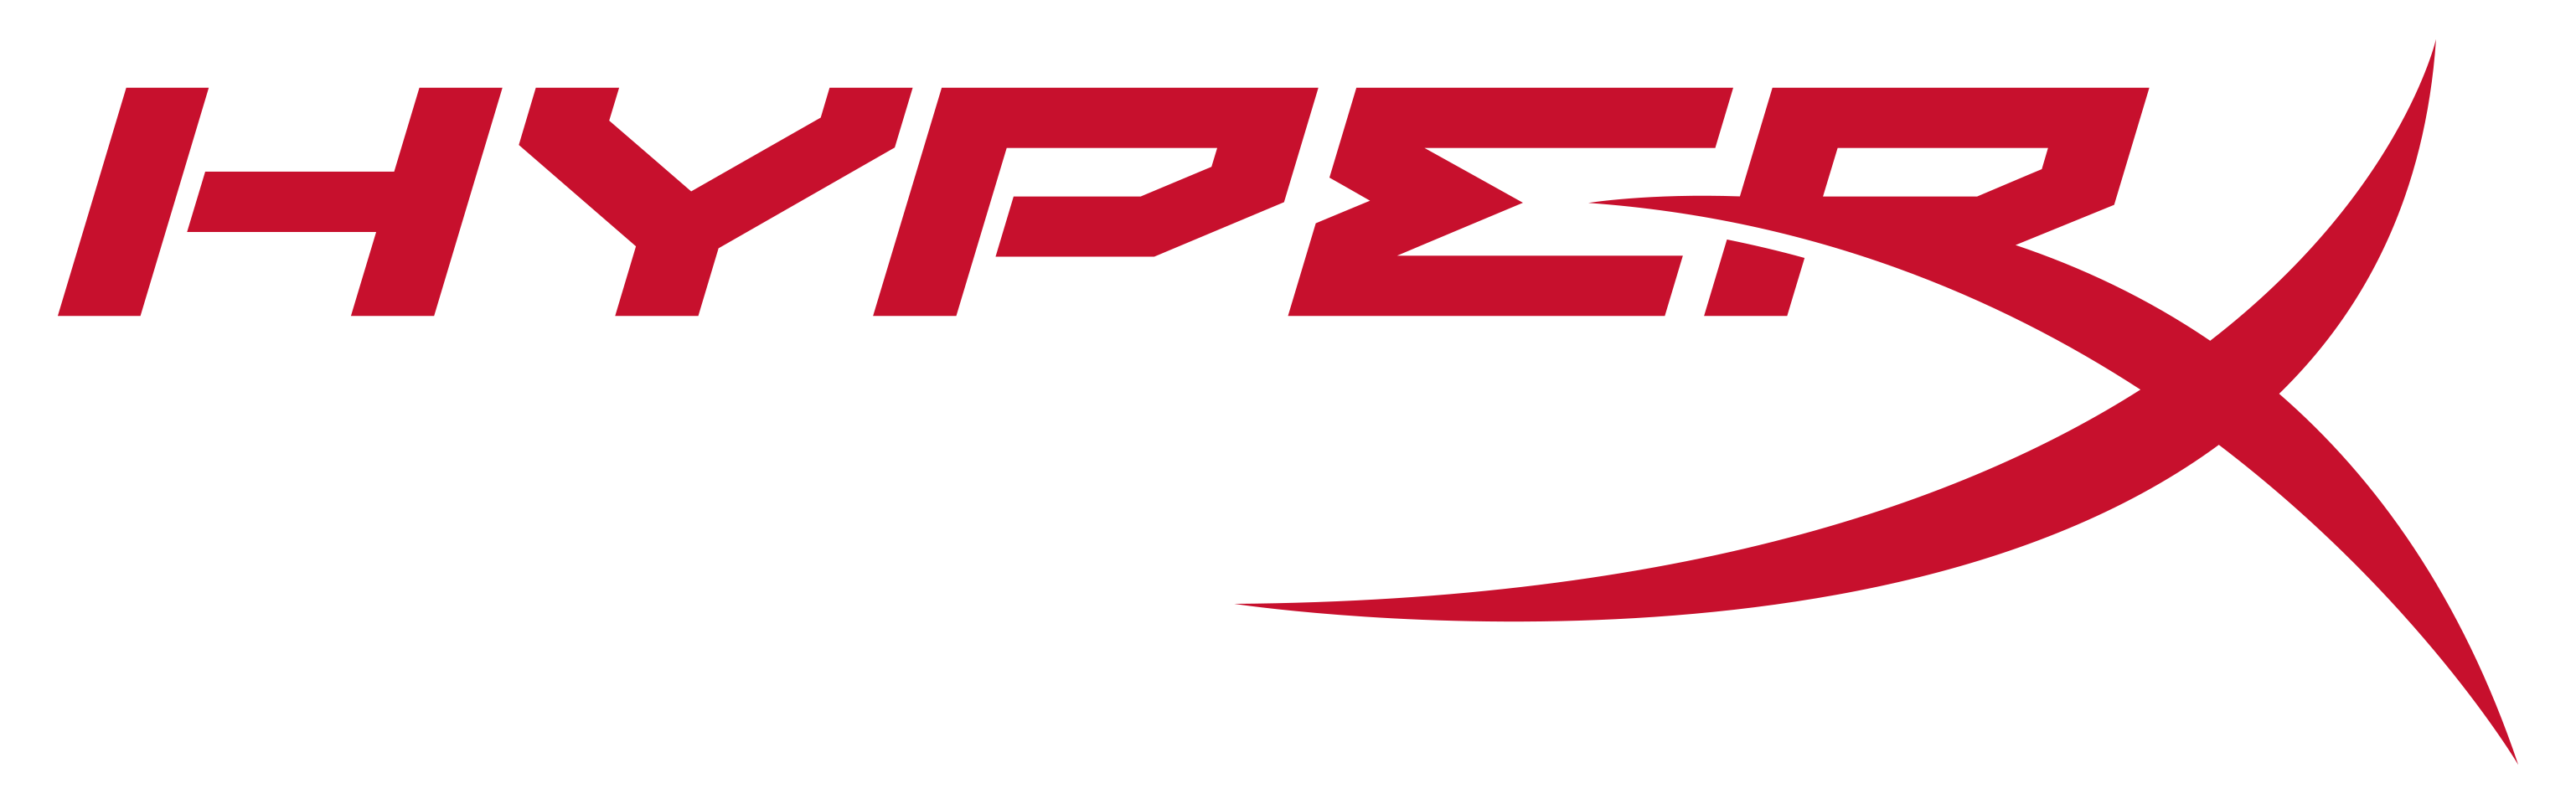 HyperX logo